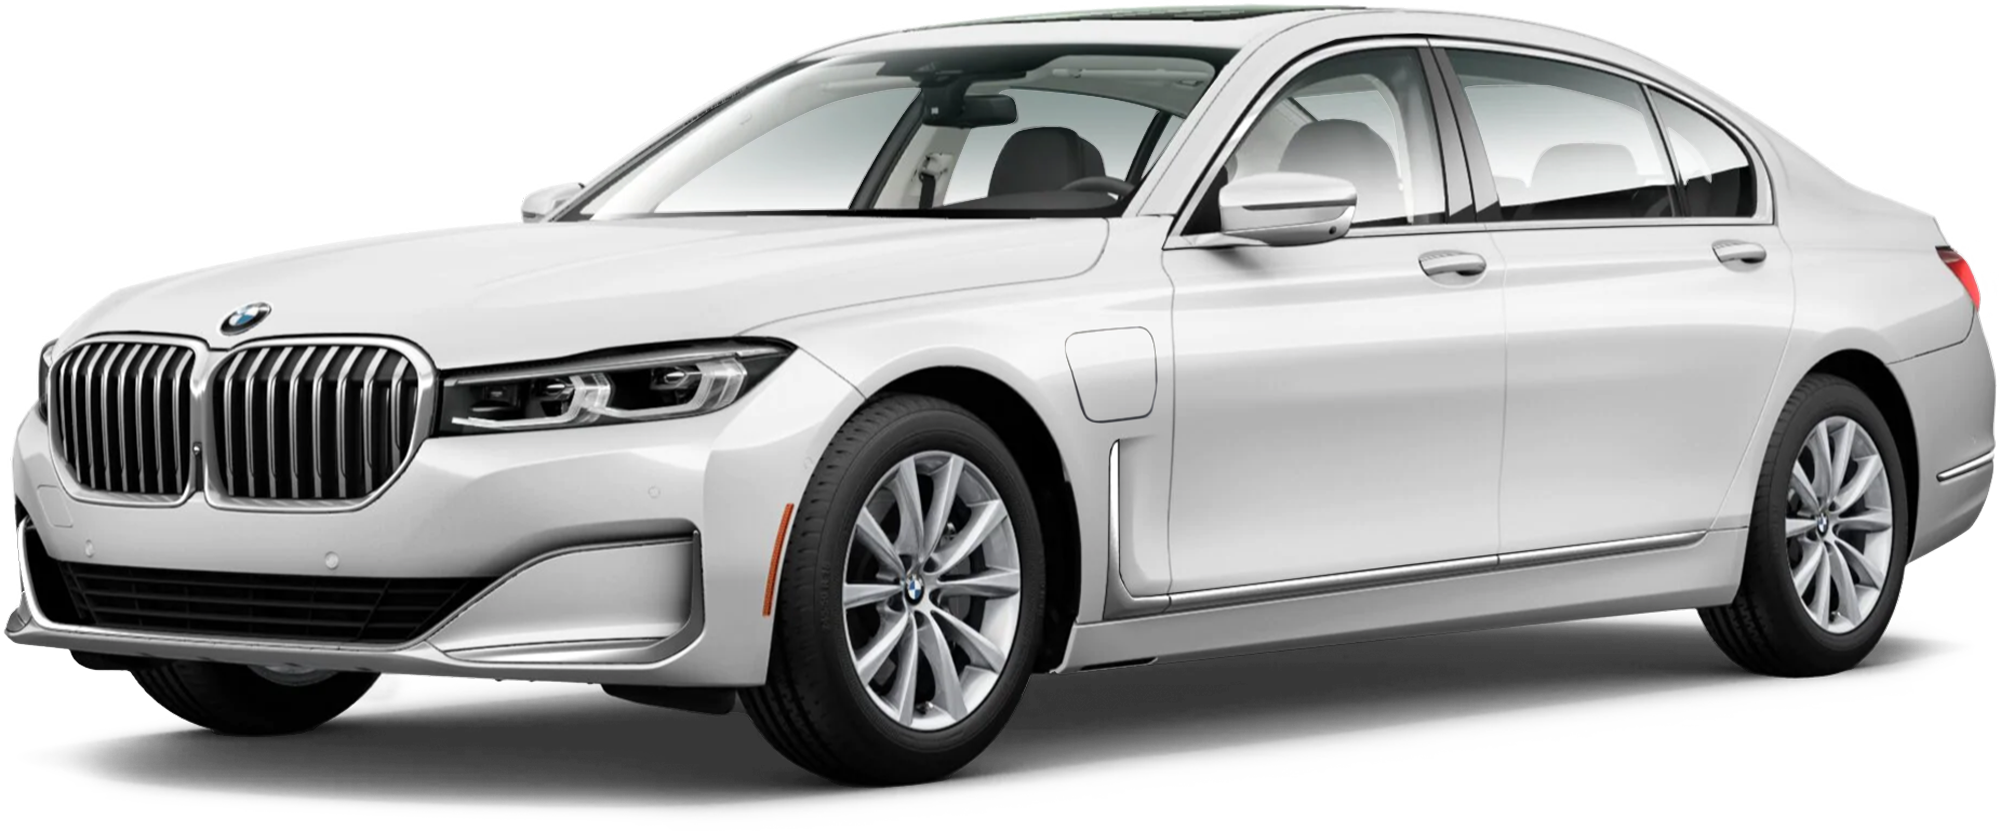 2021 BMW 745e Incentives, Specials & Offers in Sarasota FL